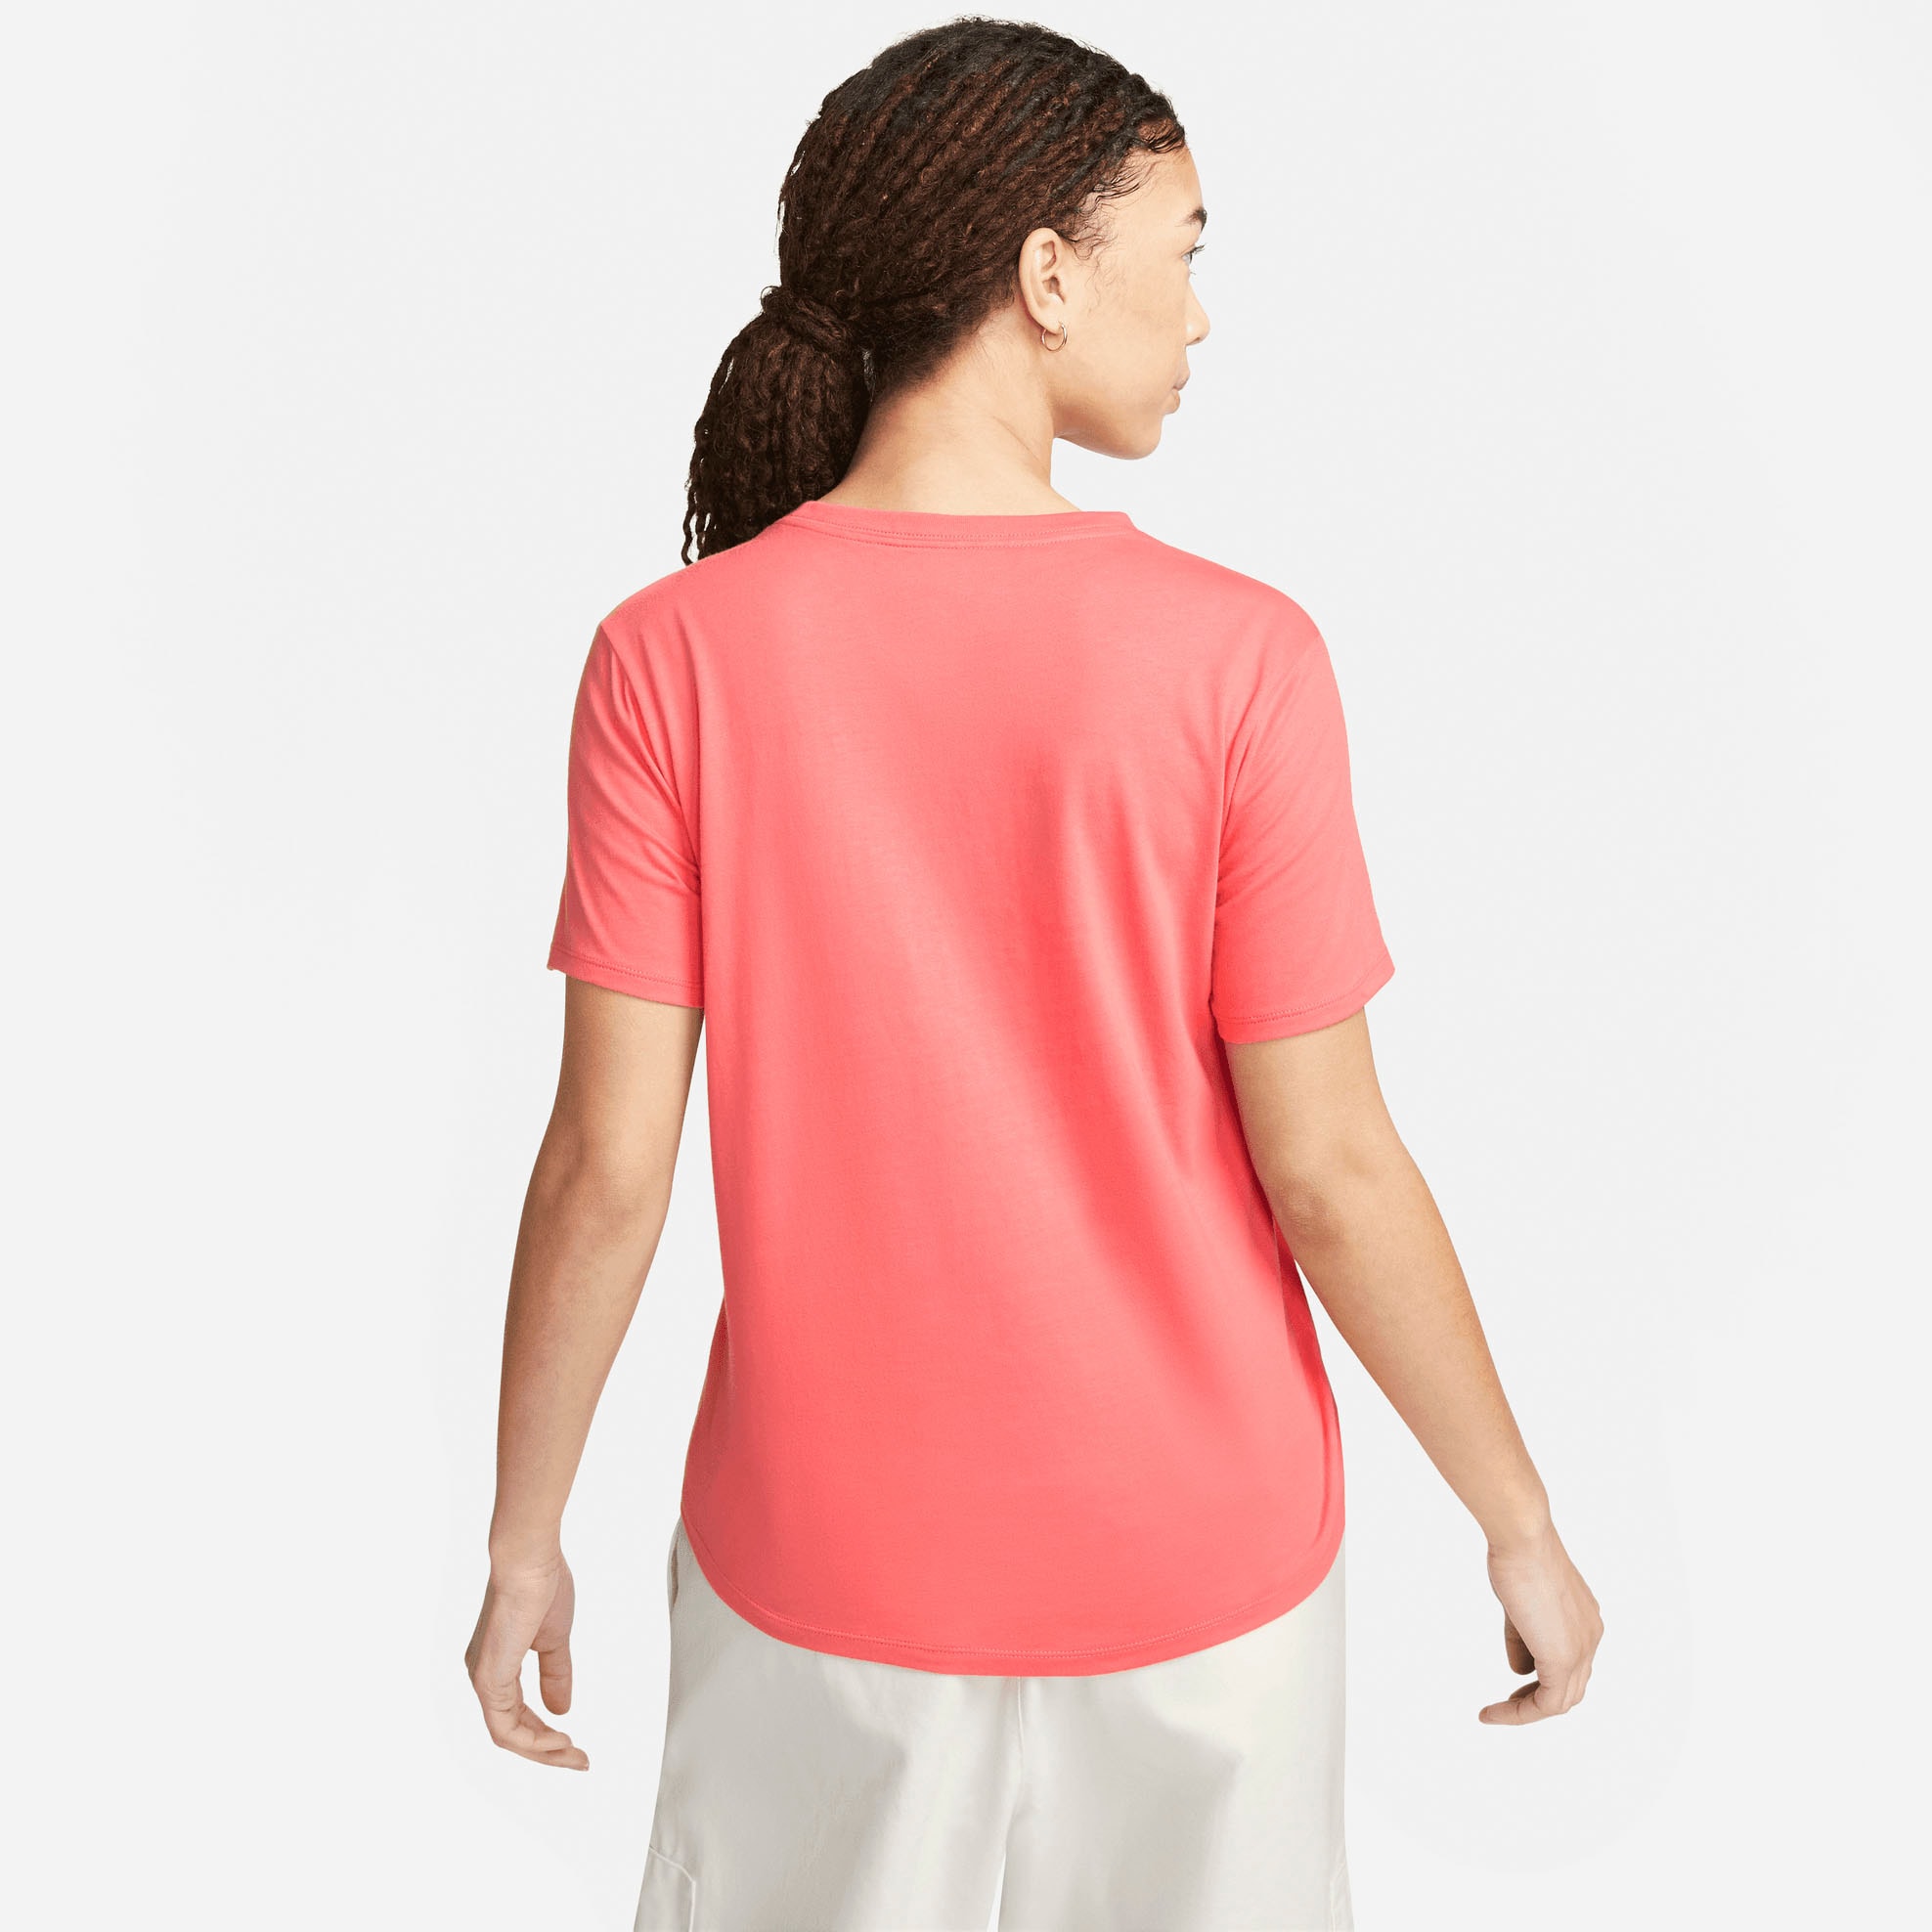 Nike Sportswear T-Shirt online WOMEN\'S »ESSENTIALS T-SHIRT« bei OTTO kaufen LOGO